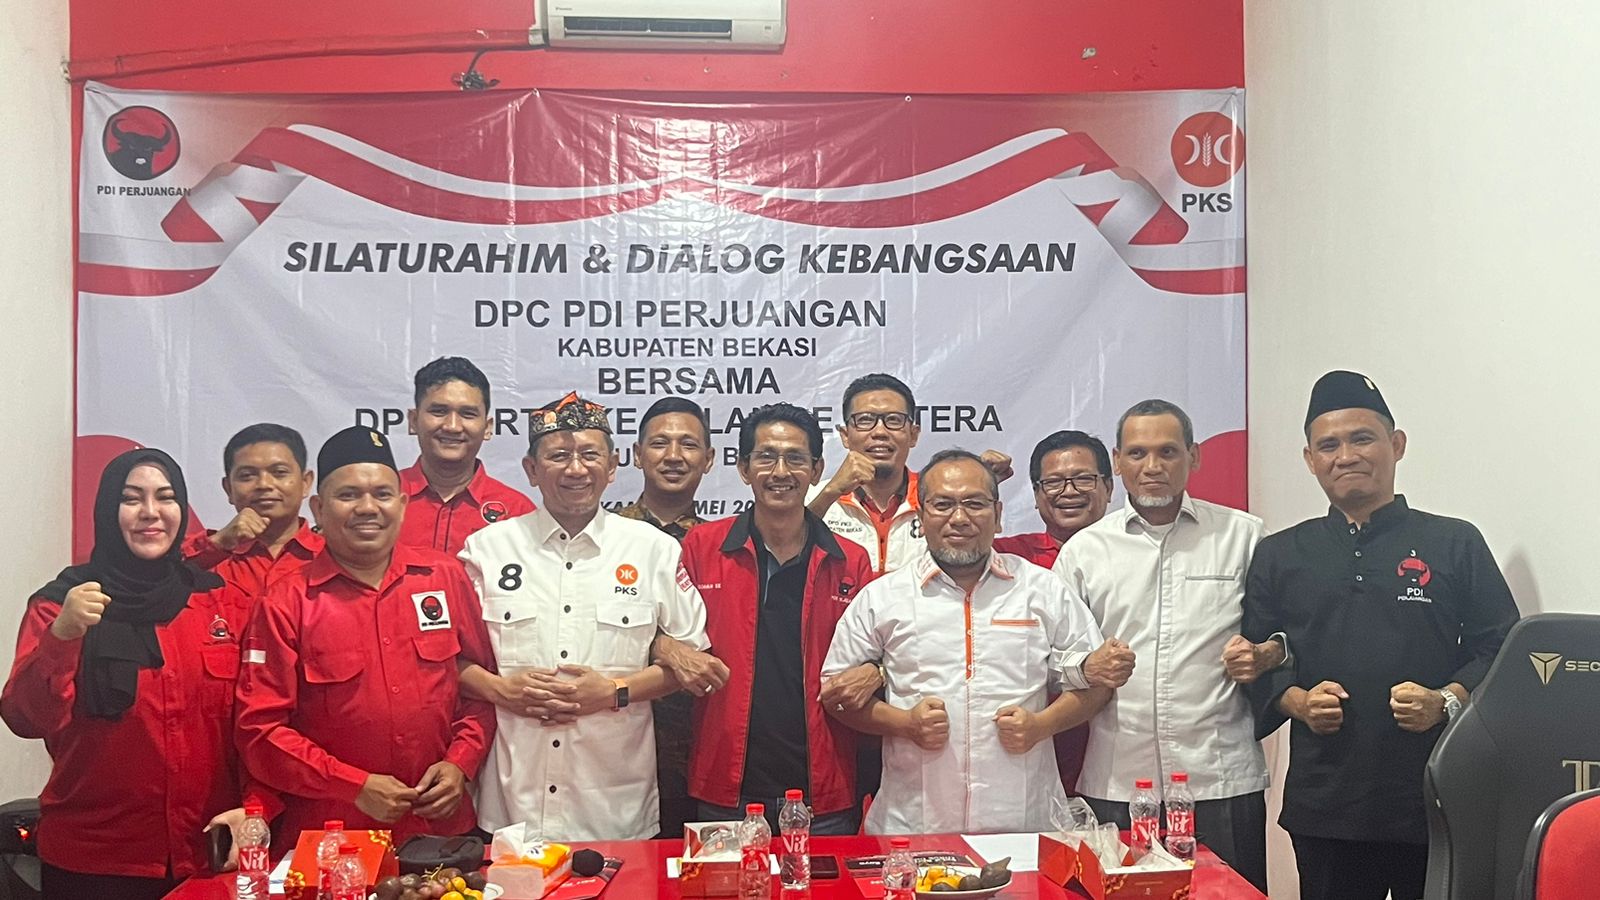 Jelang Pilkada, PDI Perjuangan dan DPD PKS Kabupaten Bekasi Berkoalisi?